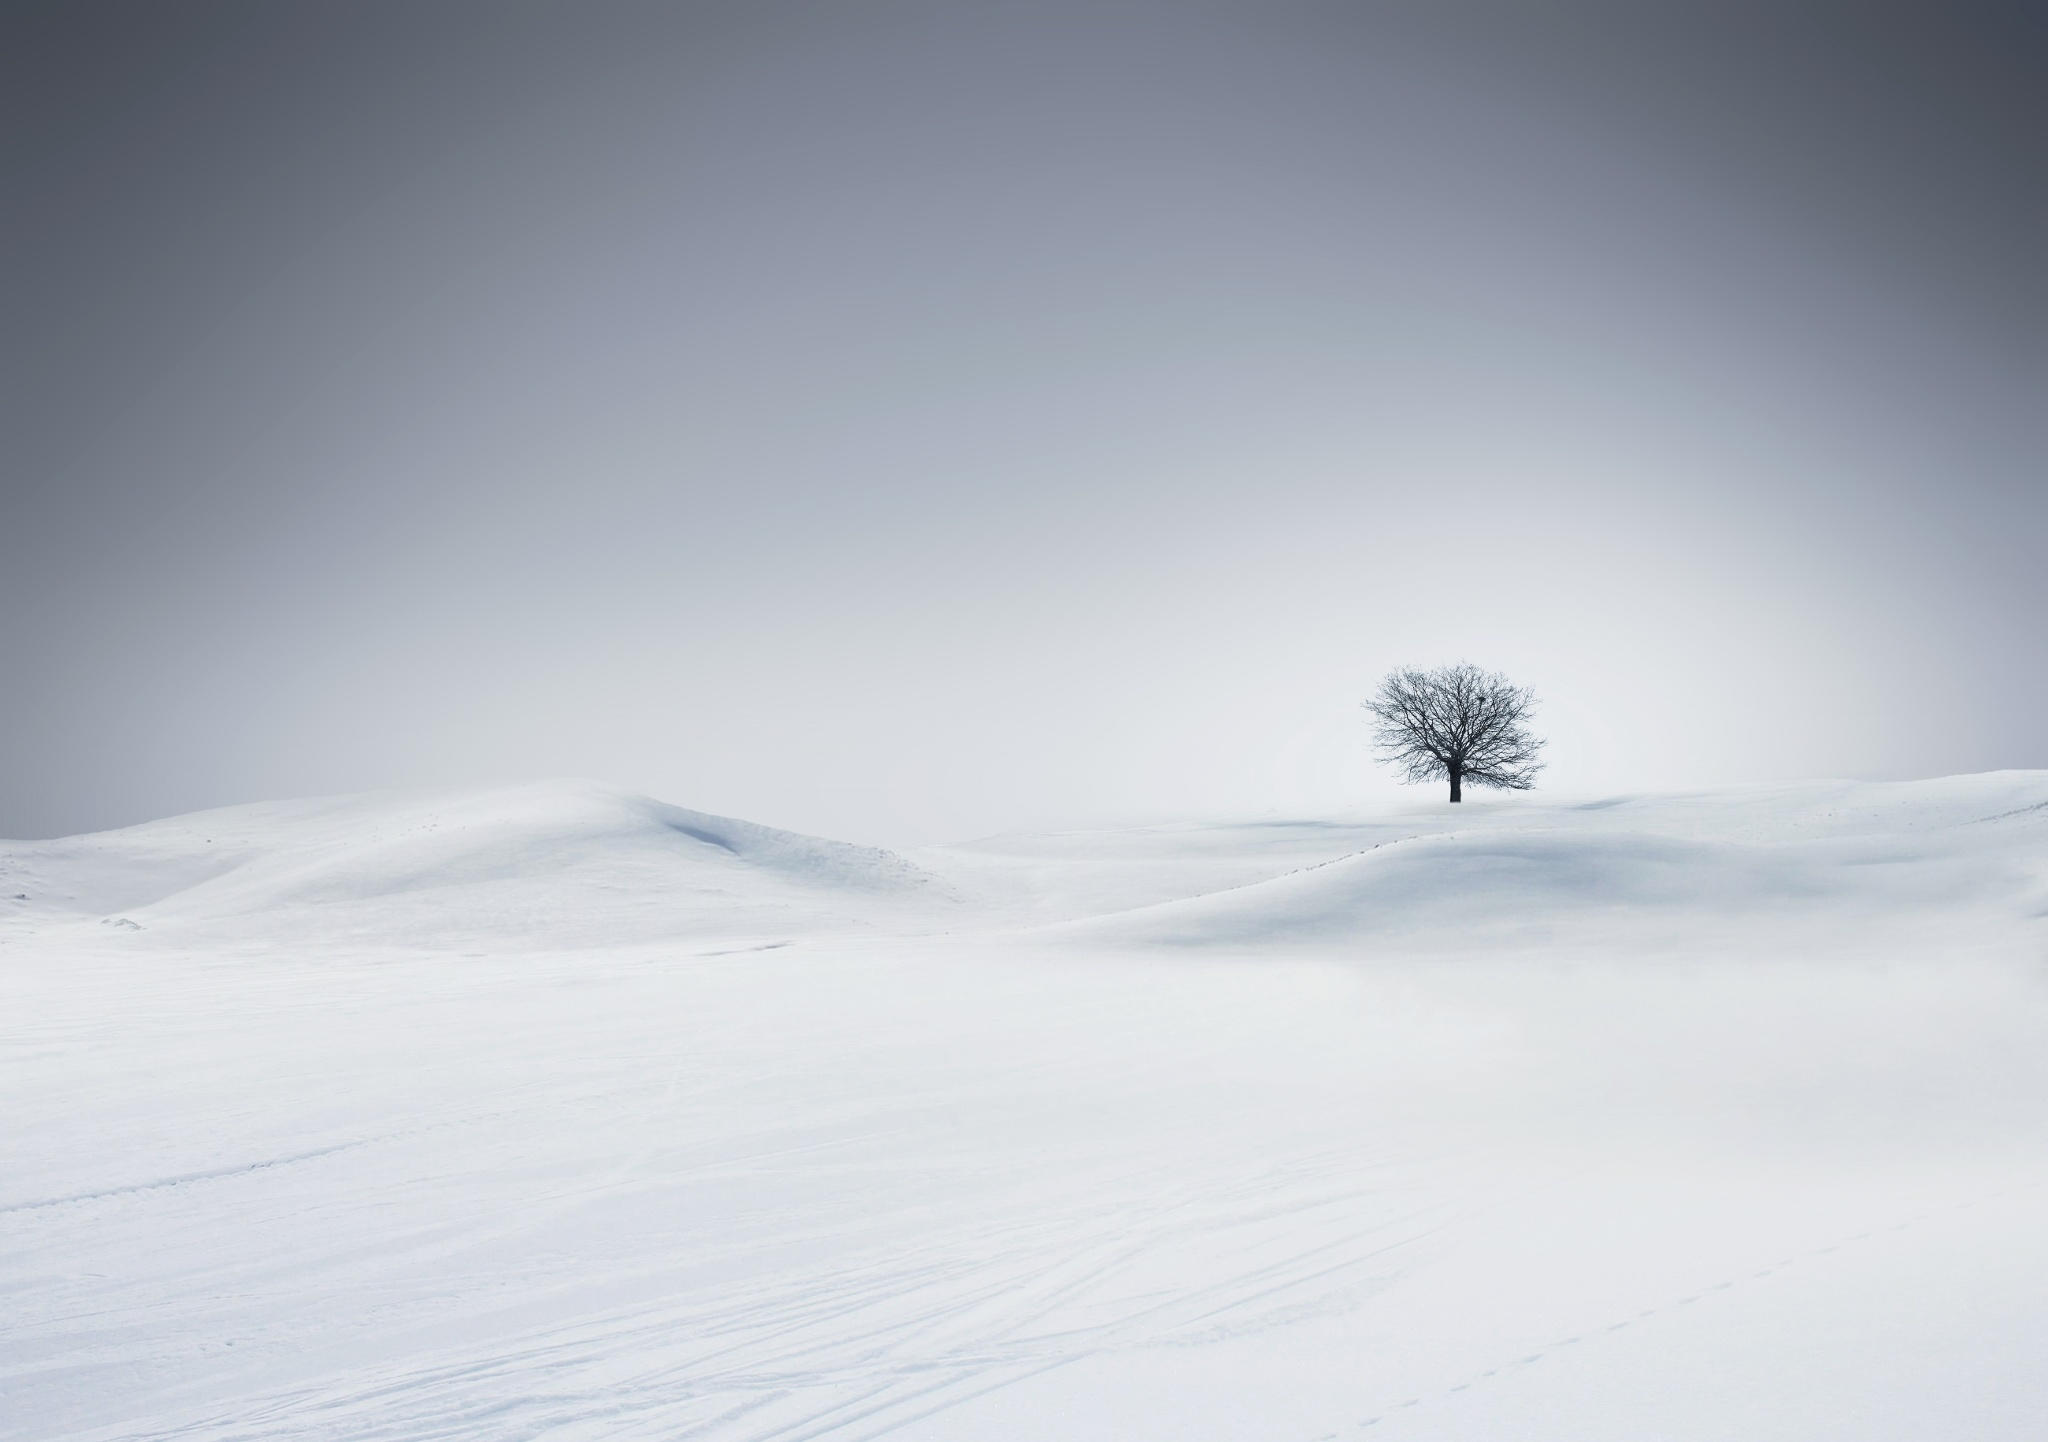 Lone tree in a winter landscape